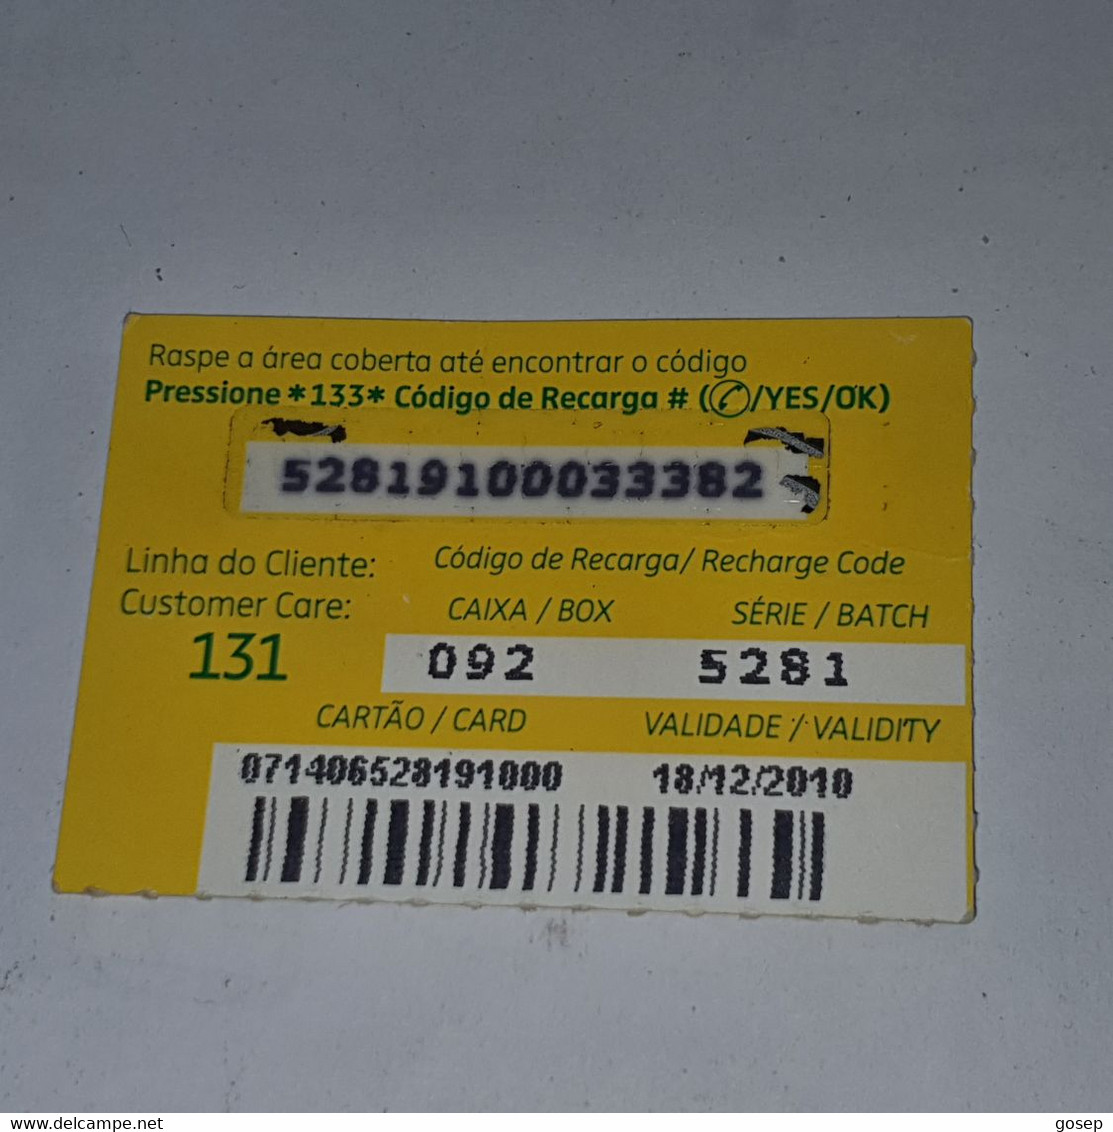 Mozambique-(MZ-MCE-REC-0005)-(11)-Giro De 20-(52819100033382)-(18/12/2010)-used Card - Mozambique